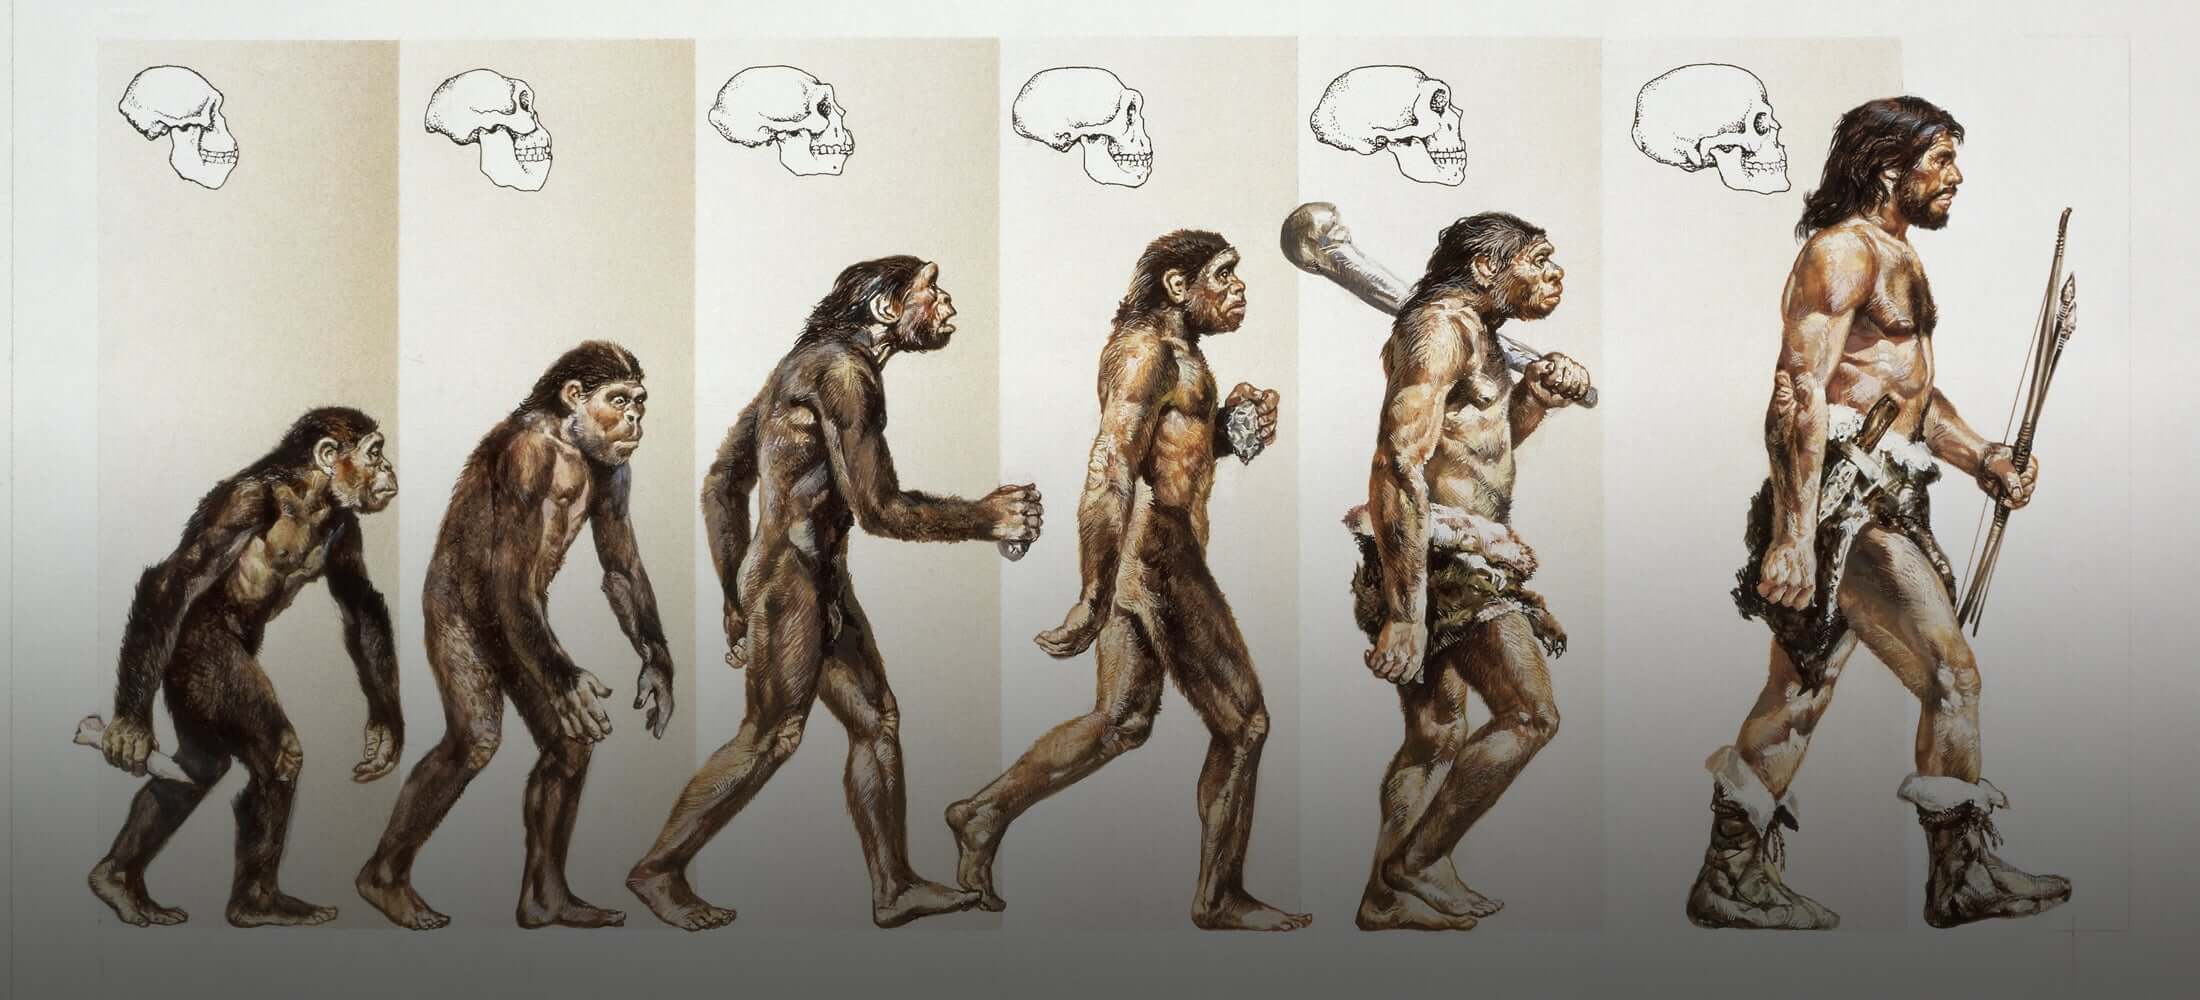 Секреты в нашей ДНК. Хронология эволюции человека описывает основные события в эволюции вида Homo sapiens и эволюцию предков современного человека. Фото.